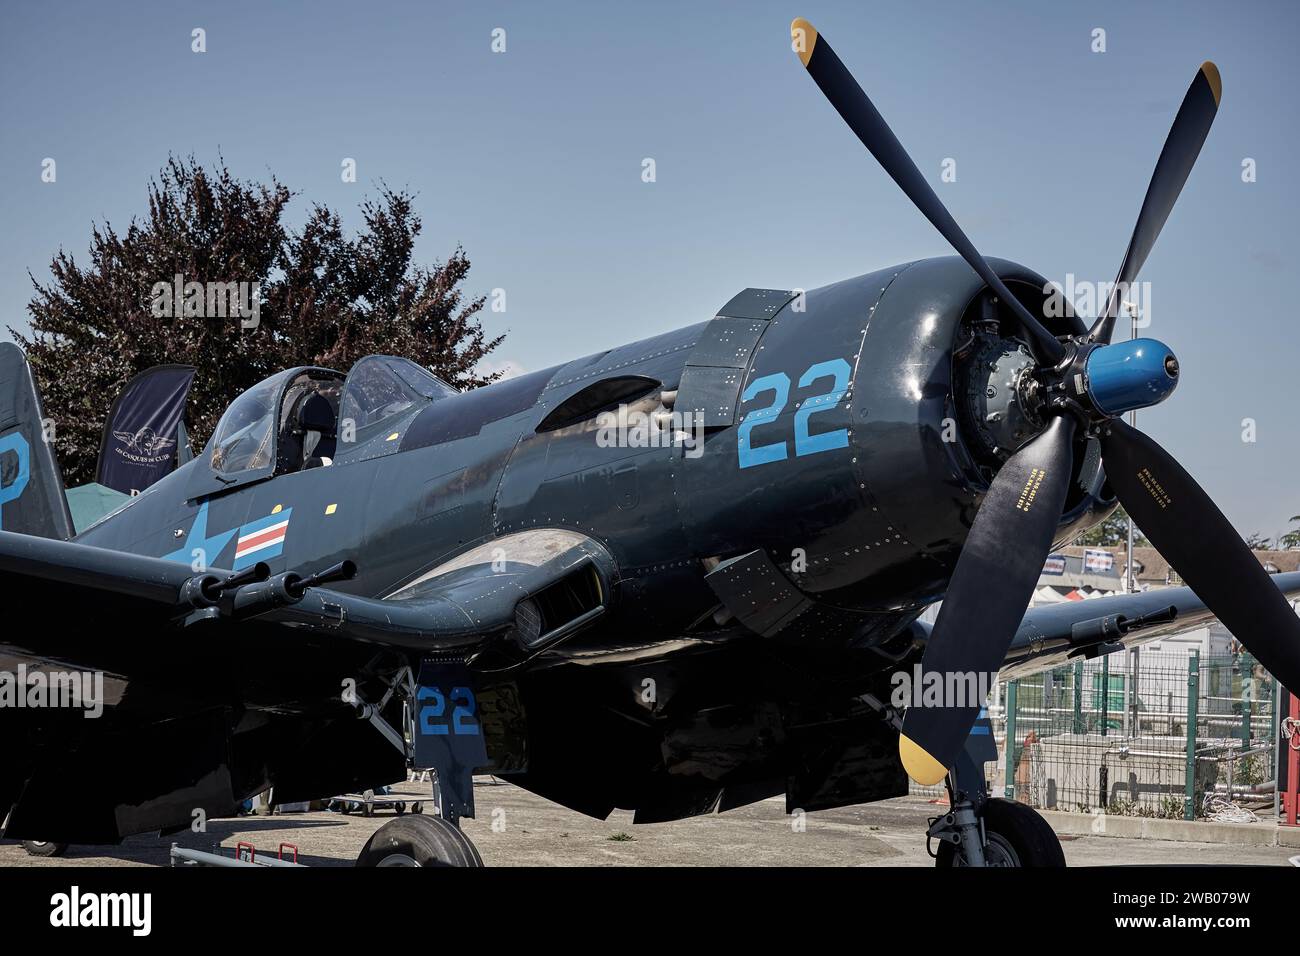 US Navy Airplane della Guerra del pacifico - autentico e mitico Corsair Foto Stock